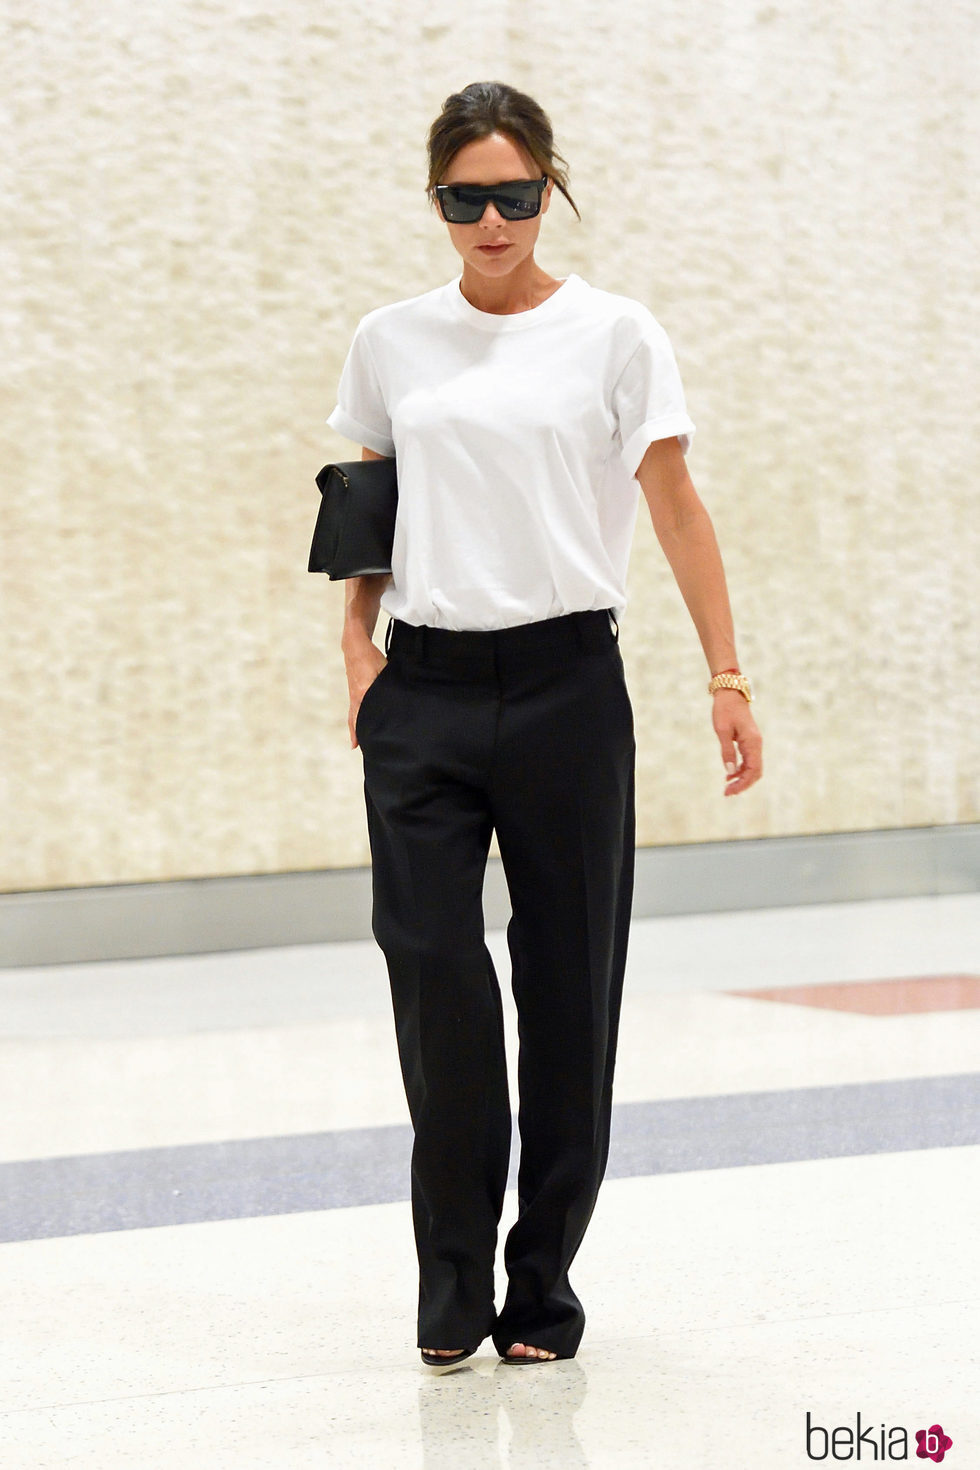 Victoria Beckham con un look muy working girl en el aeropuerto de Nueva York